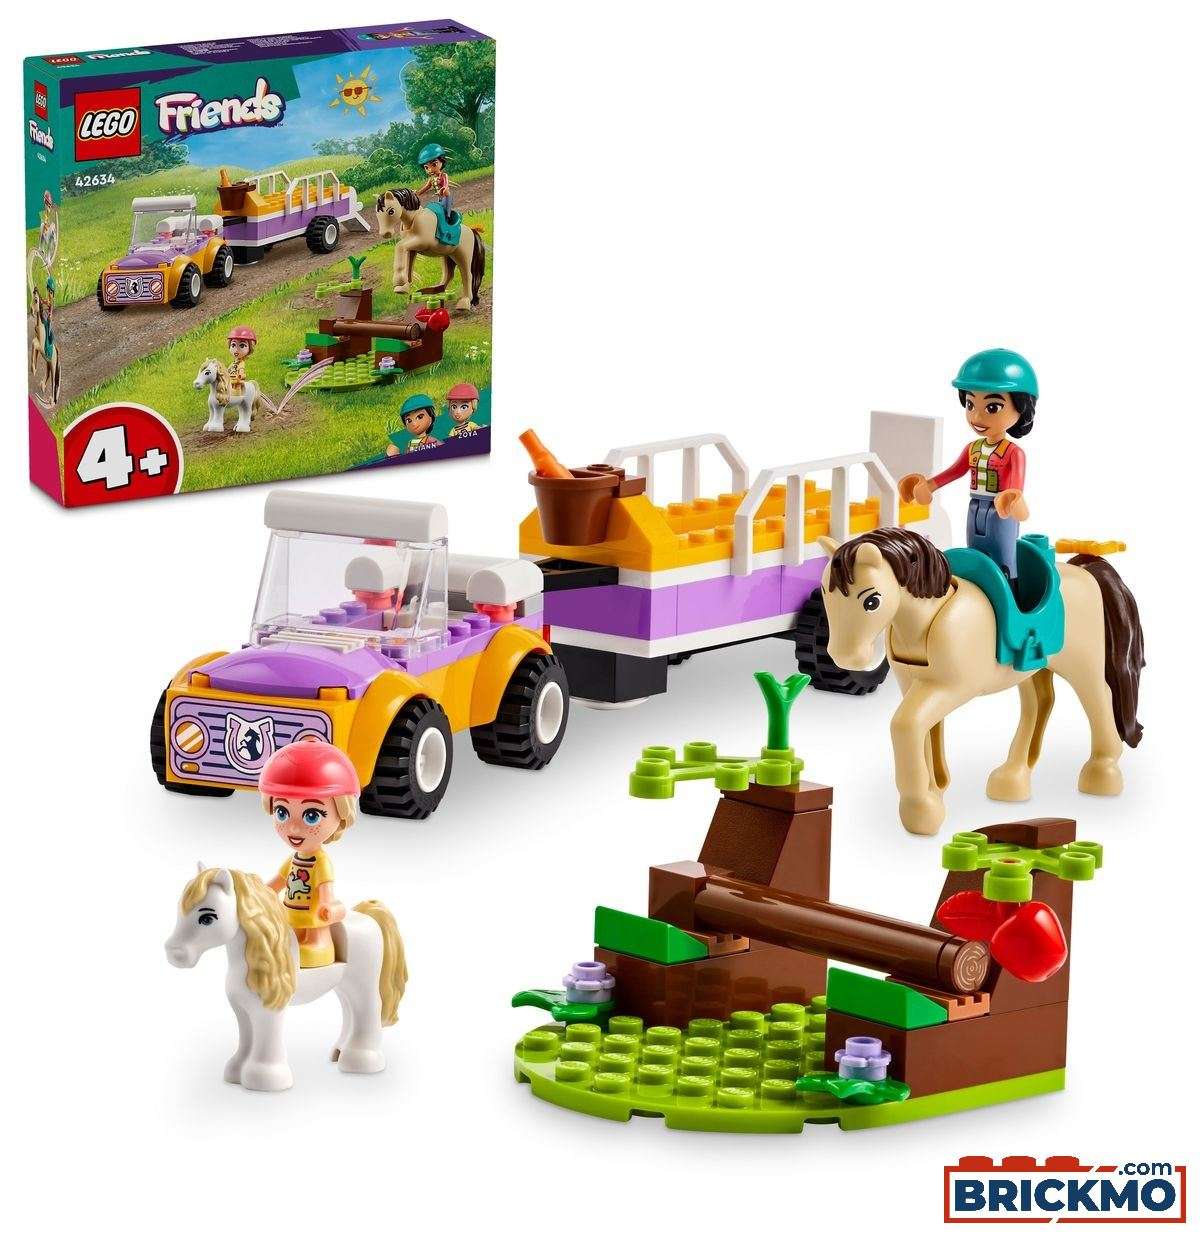 LEGO Friends 42634 Przyczepka dla konia i kucyka 42634